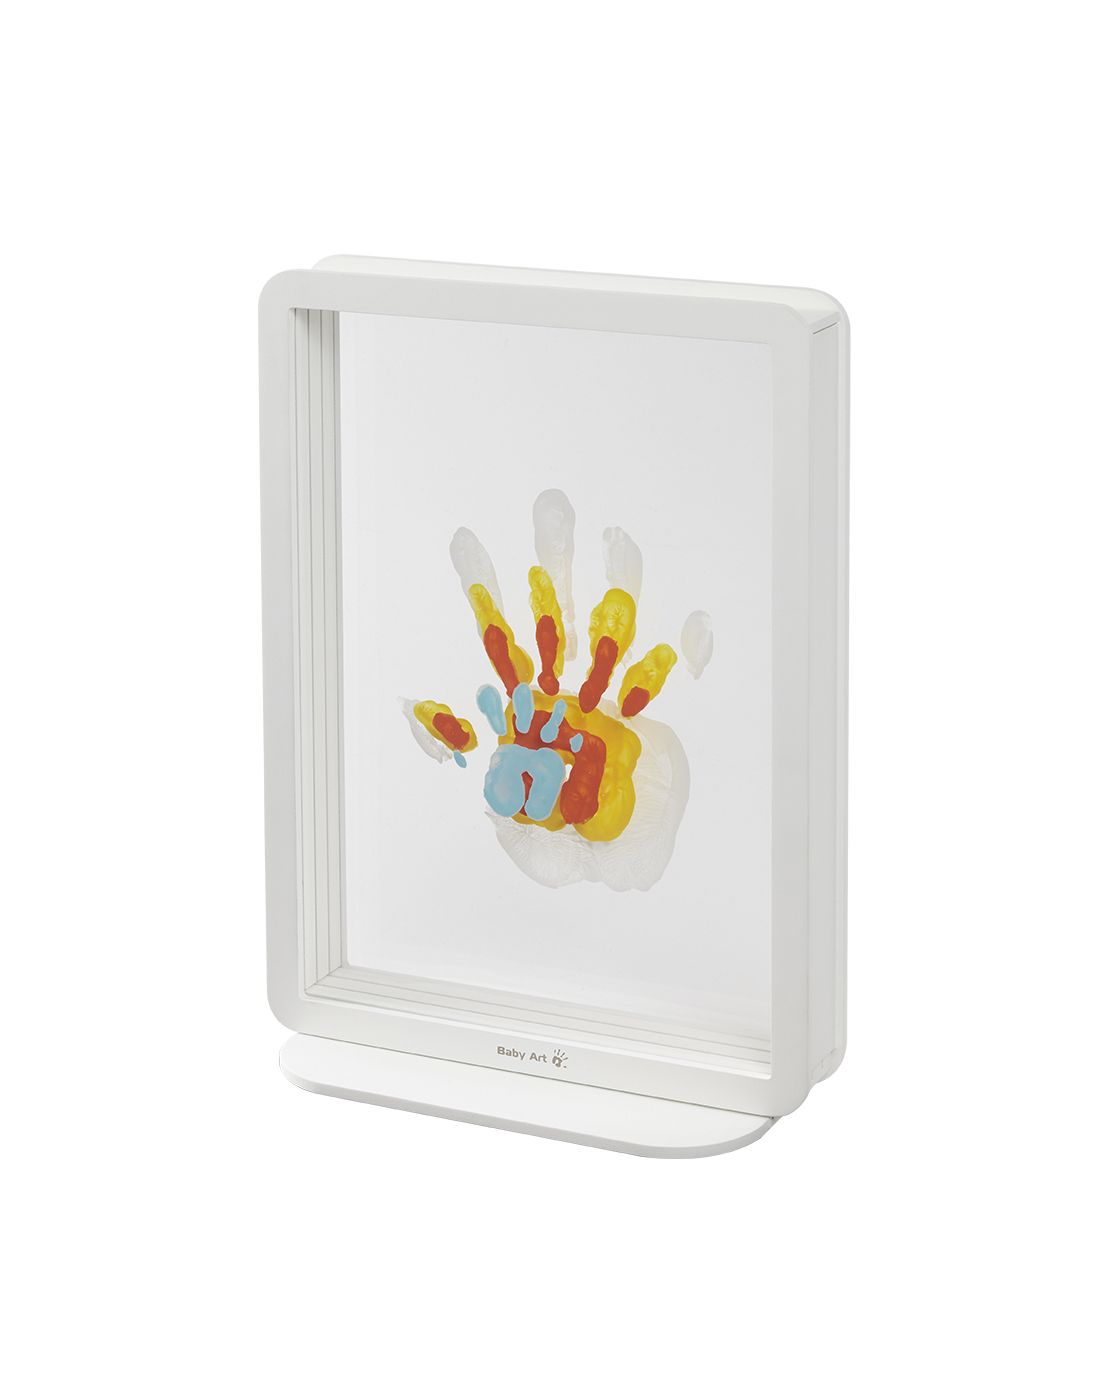 Αποτύπωμα Χεριών Family Touch White | LAPIN KIDS